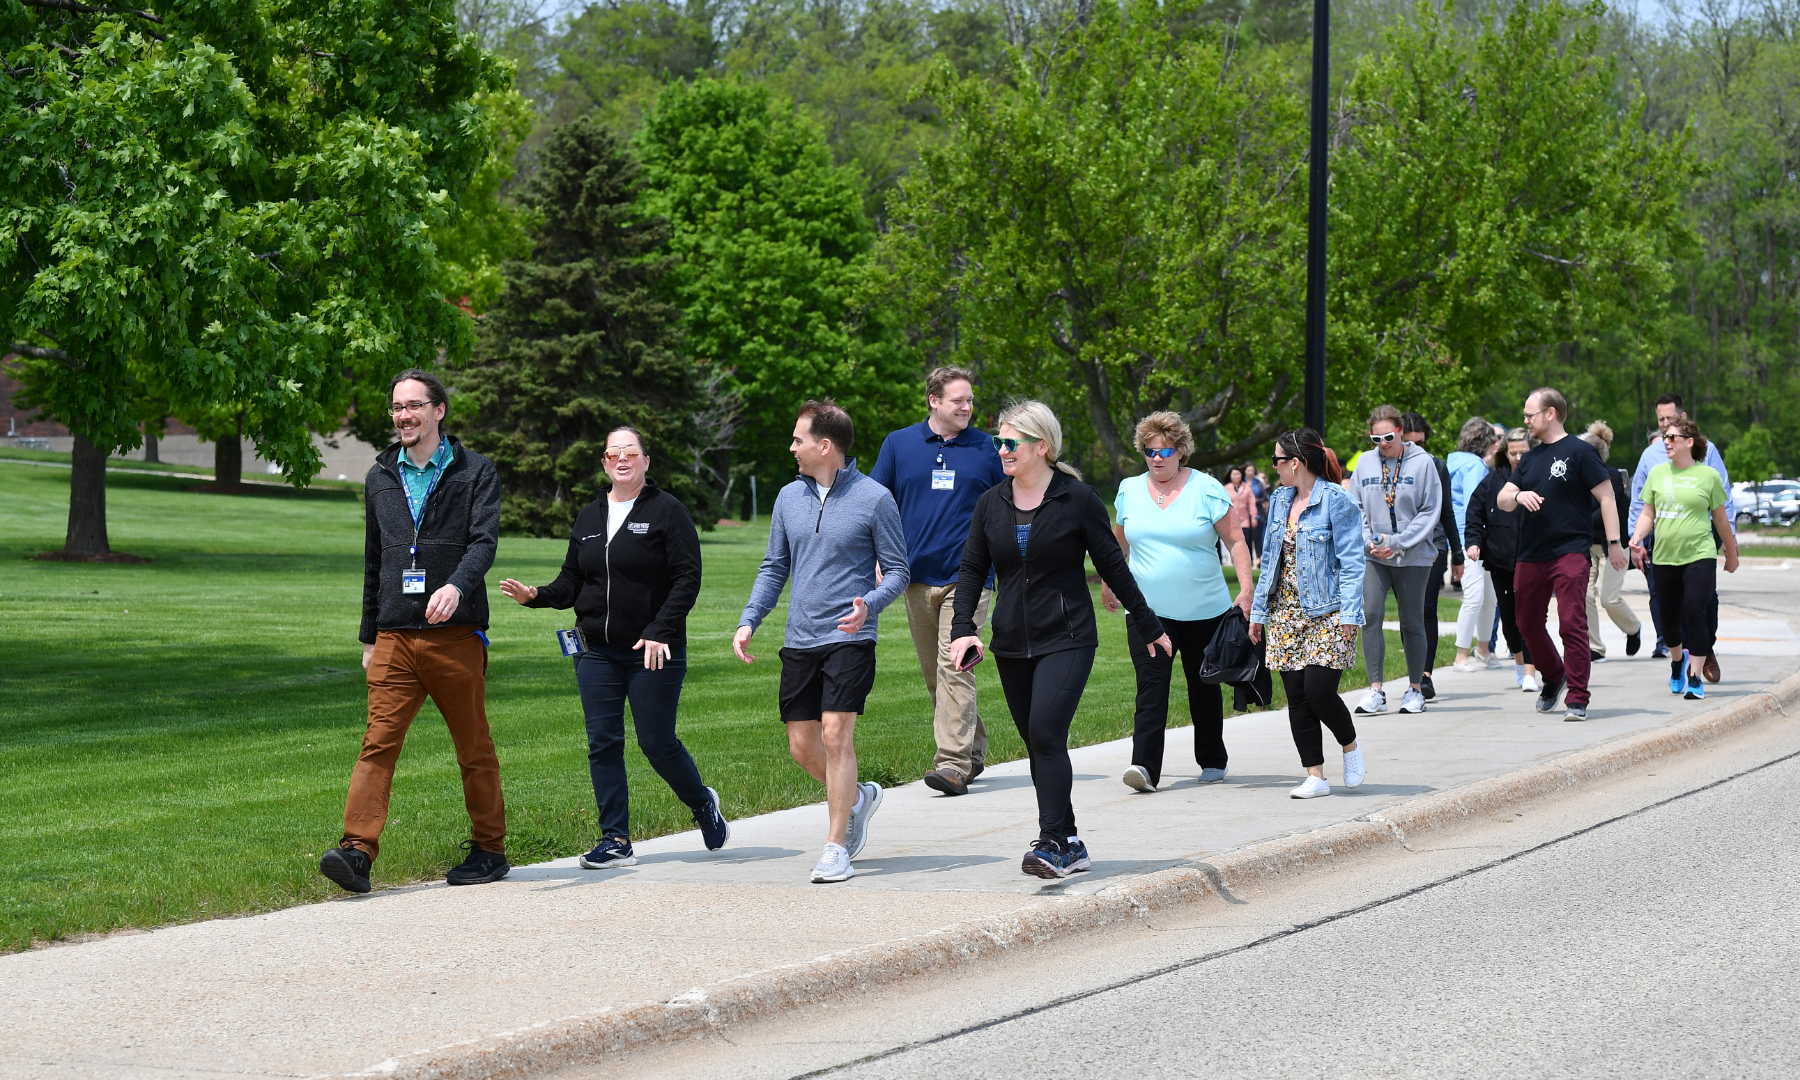 WCTC employees walking on campus